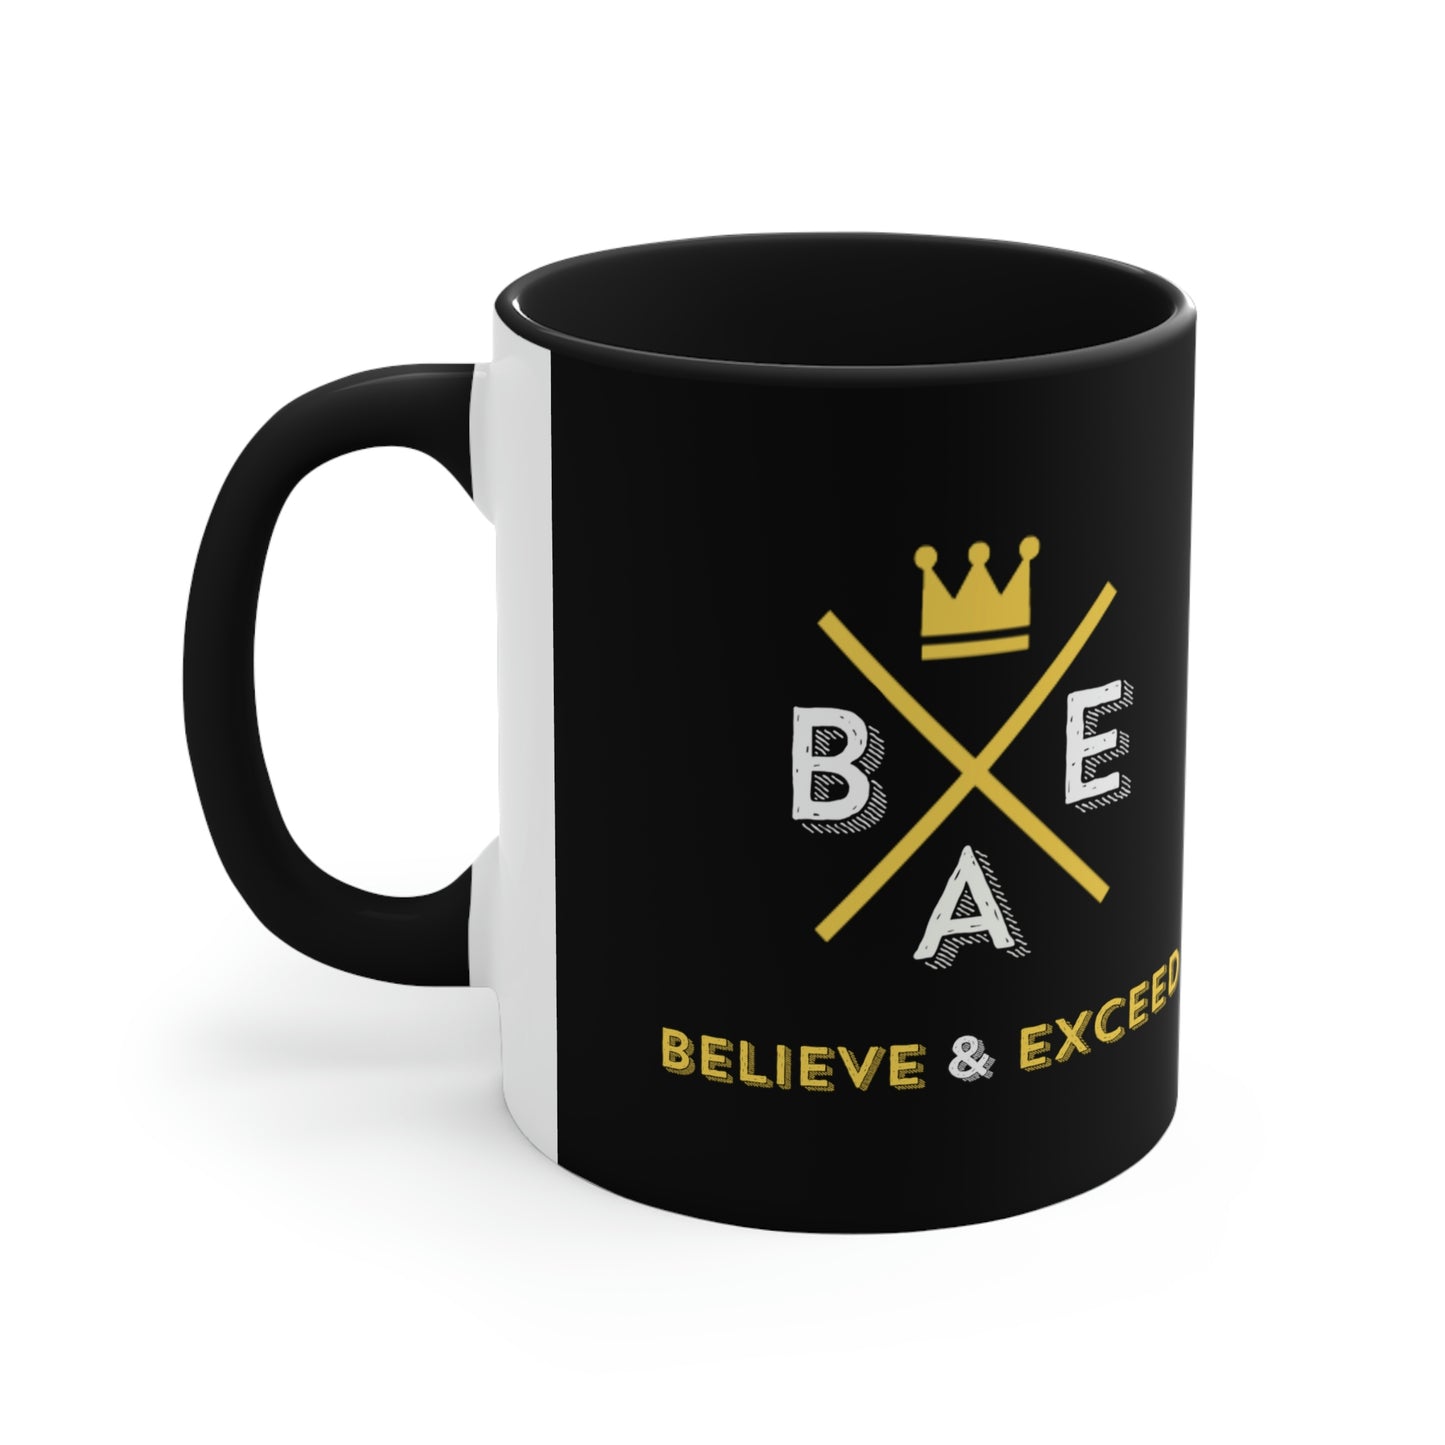 BAE Coffee Mug